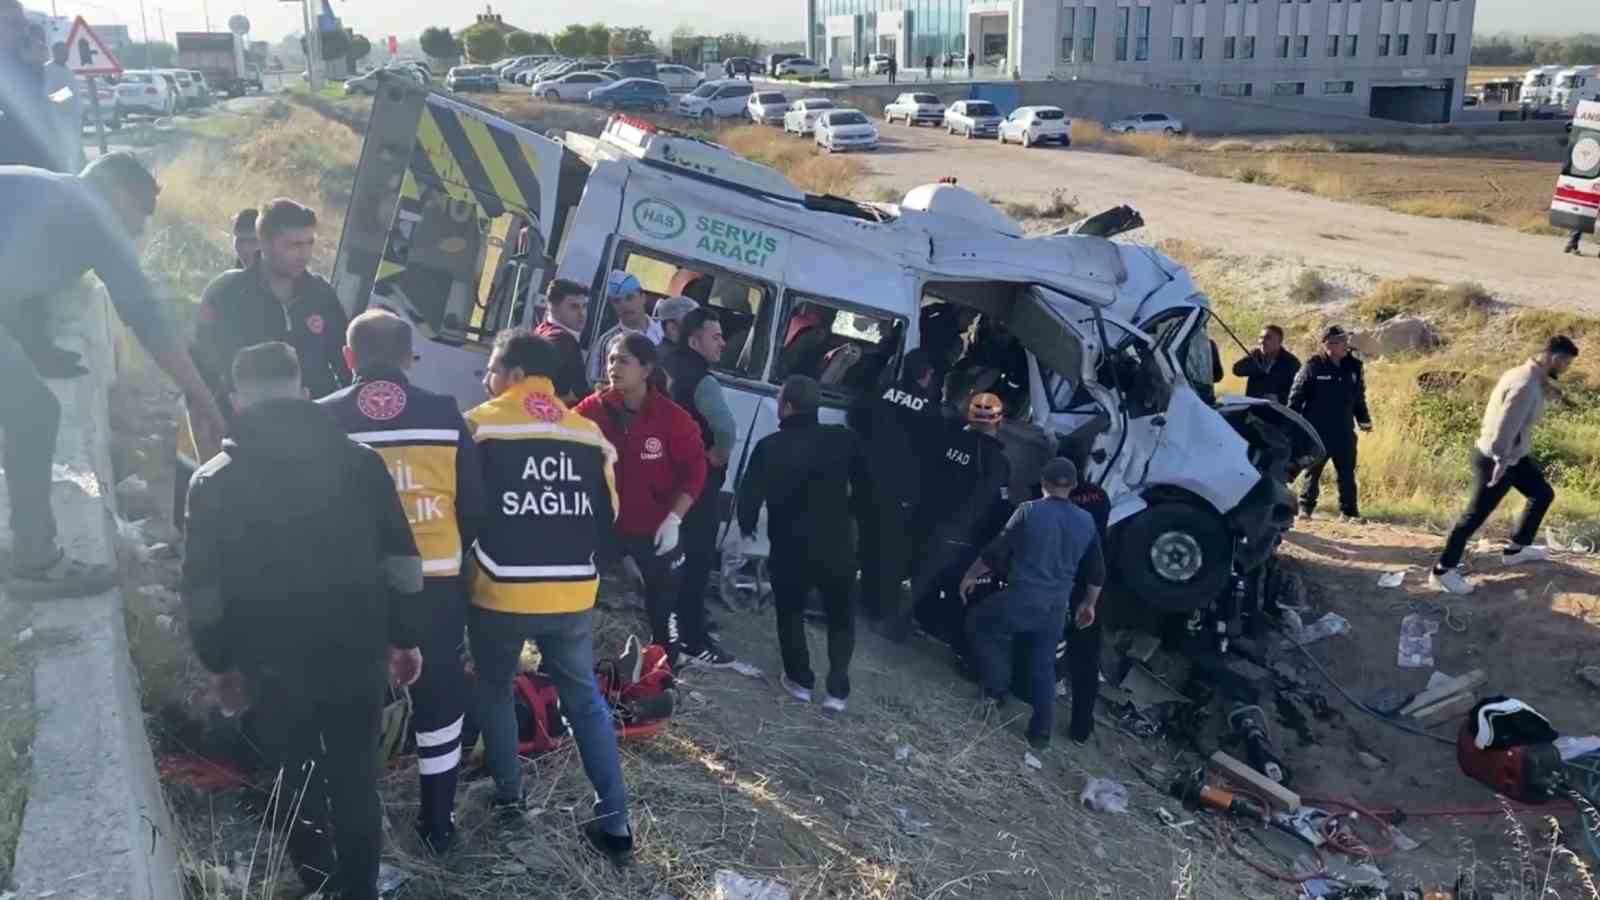 Aksaray'da kamyonet kırmızı ışık ihlali yaptı: 2 ölü, 19 yaralı